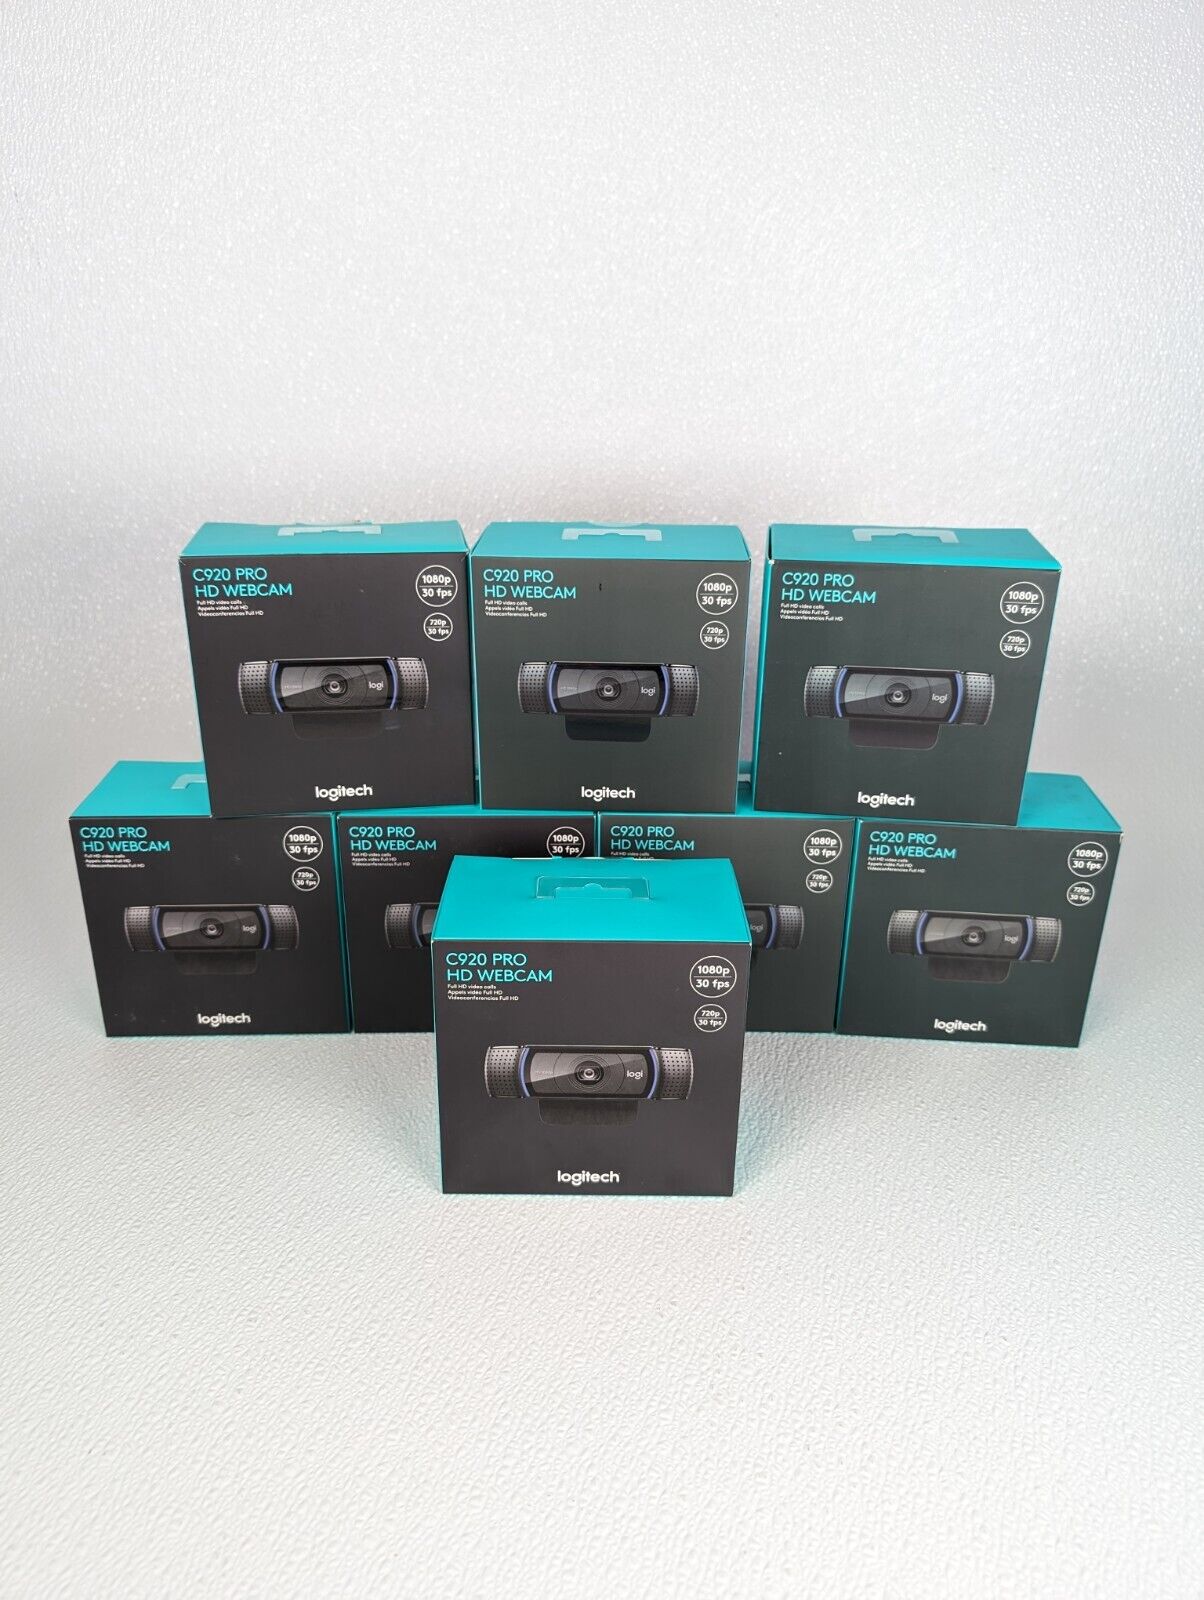 Logitech C920 Pro HD 1080p 30fps Webcam - w/Mic & Autofocus 960-00764 NEW SEALED